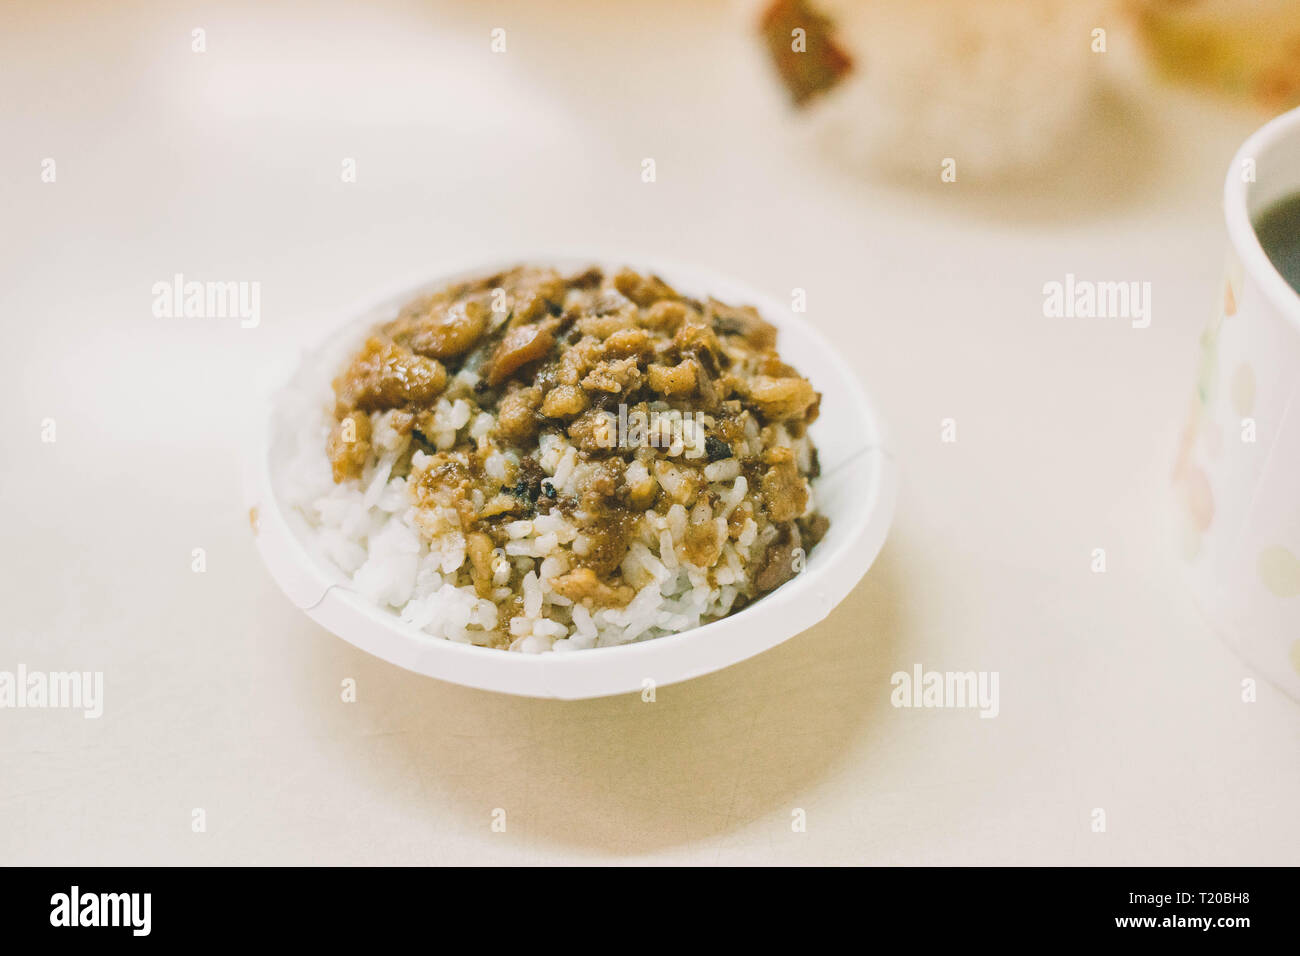 Gemeinsame Street Food in Taiwan, Taiwan Hackfleisch Reis nachfüllen. Stockfoto